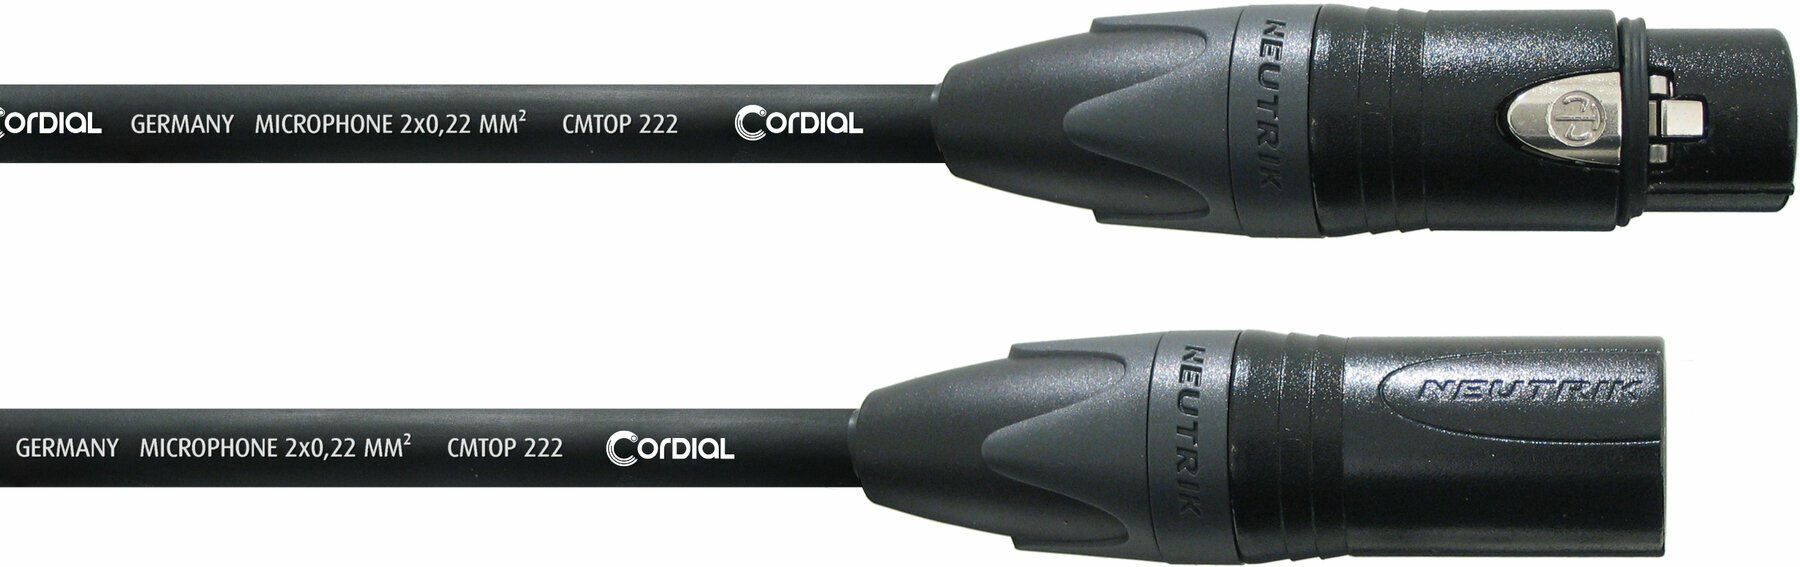 Cablu complet pentru microfoane Cordial CSM 10 FM Gold Negru 10 m